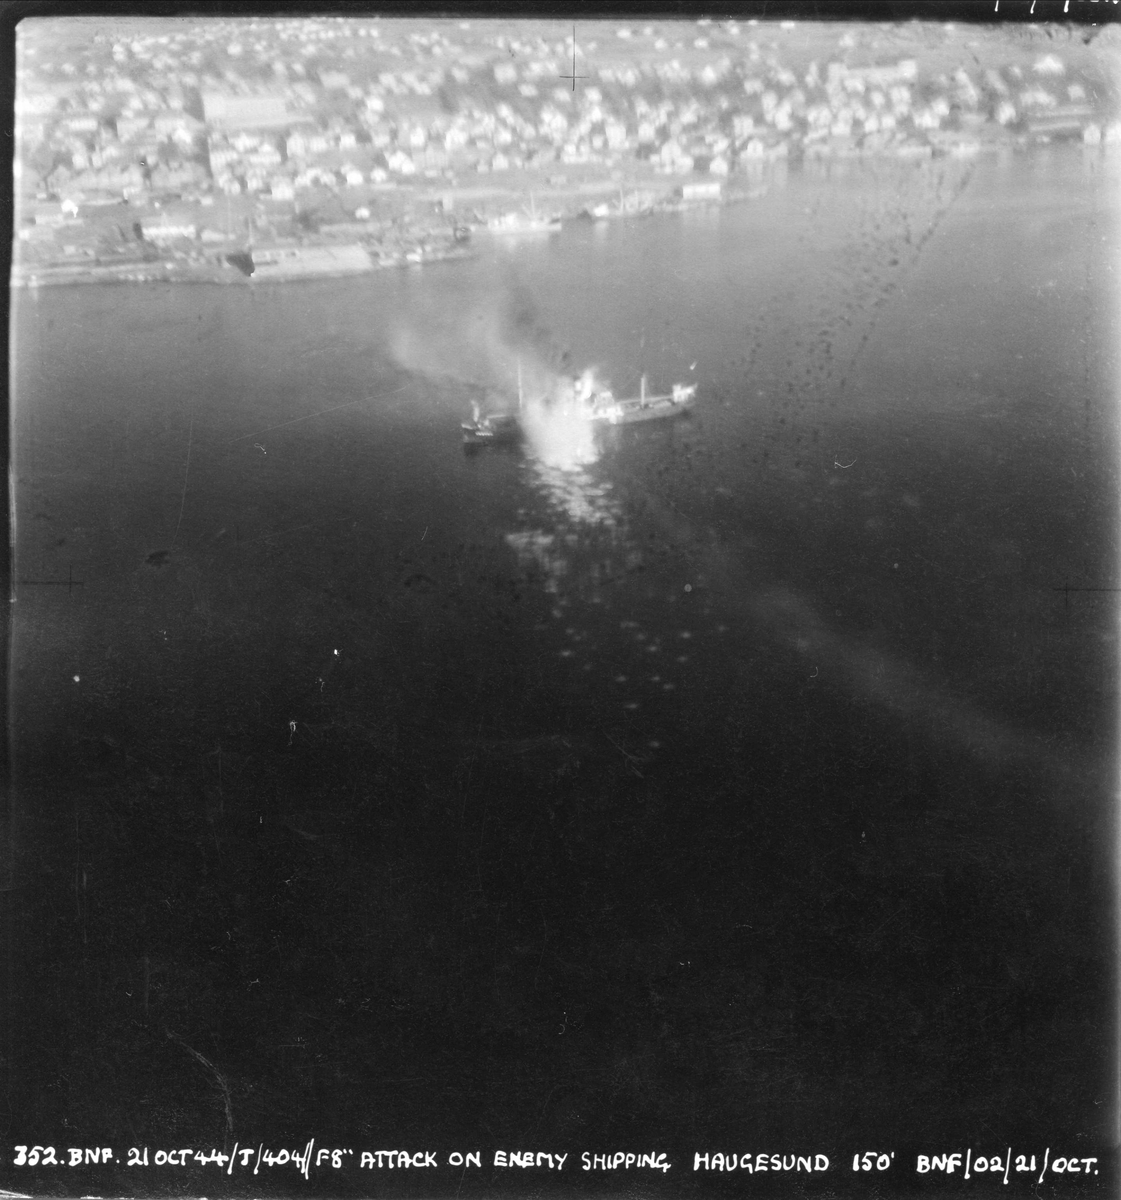 Fly fra Banff Strike Wing angriper fiendtlige skip i Haugesund, 21. oktober 1944.